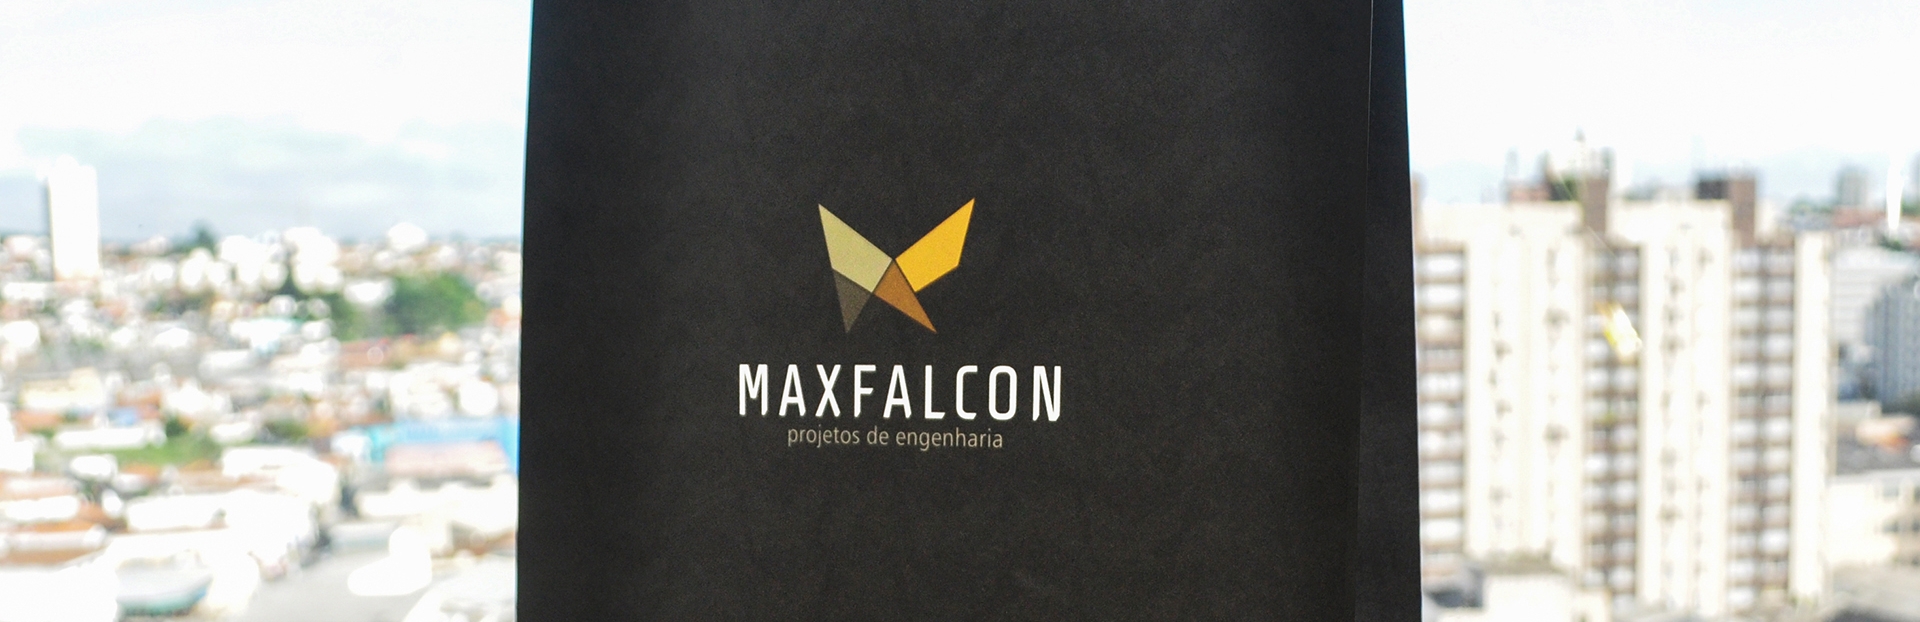 Maxfalcon